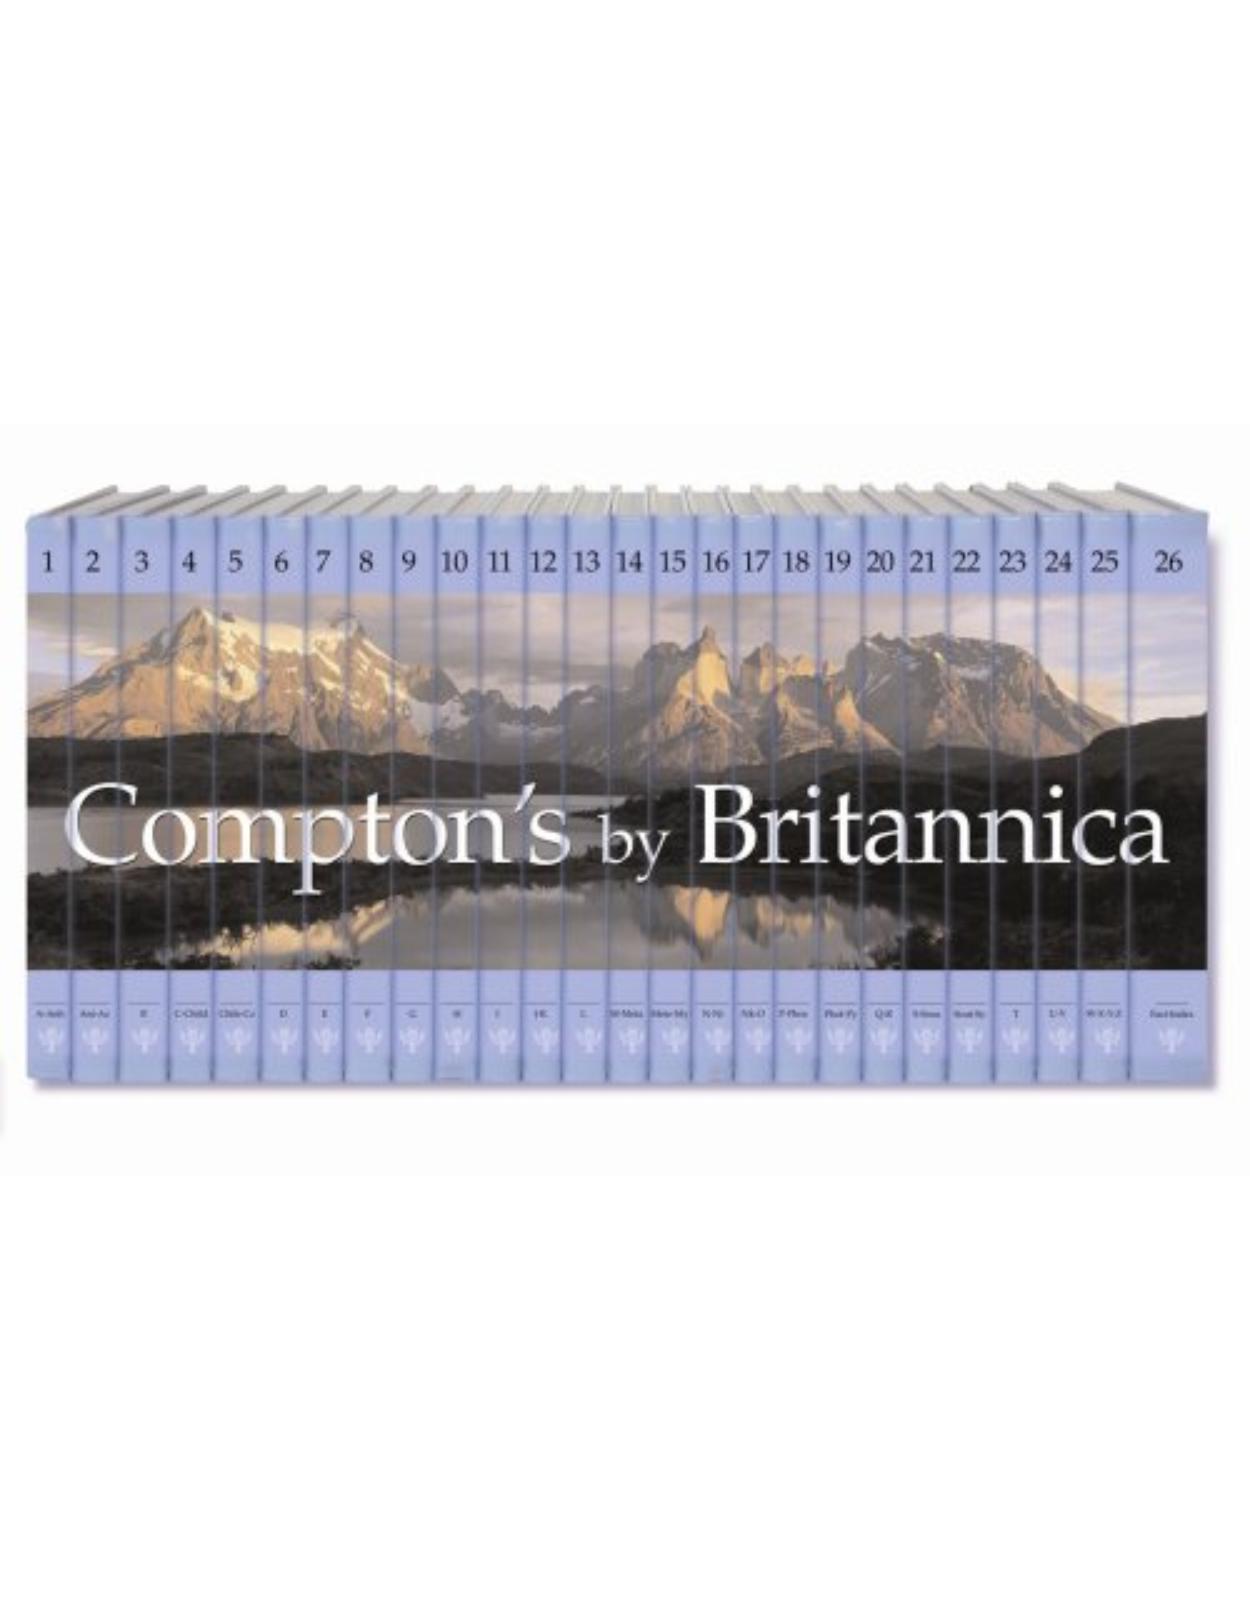 Compton's By Britannica 26 vol/set